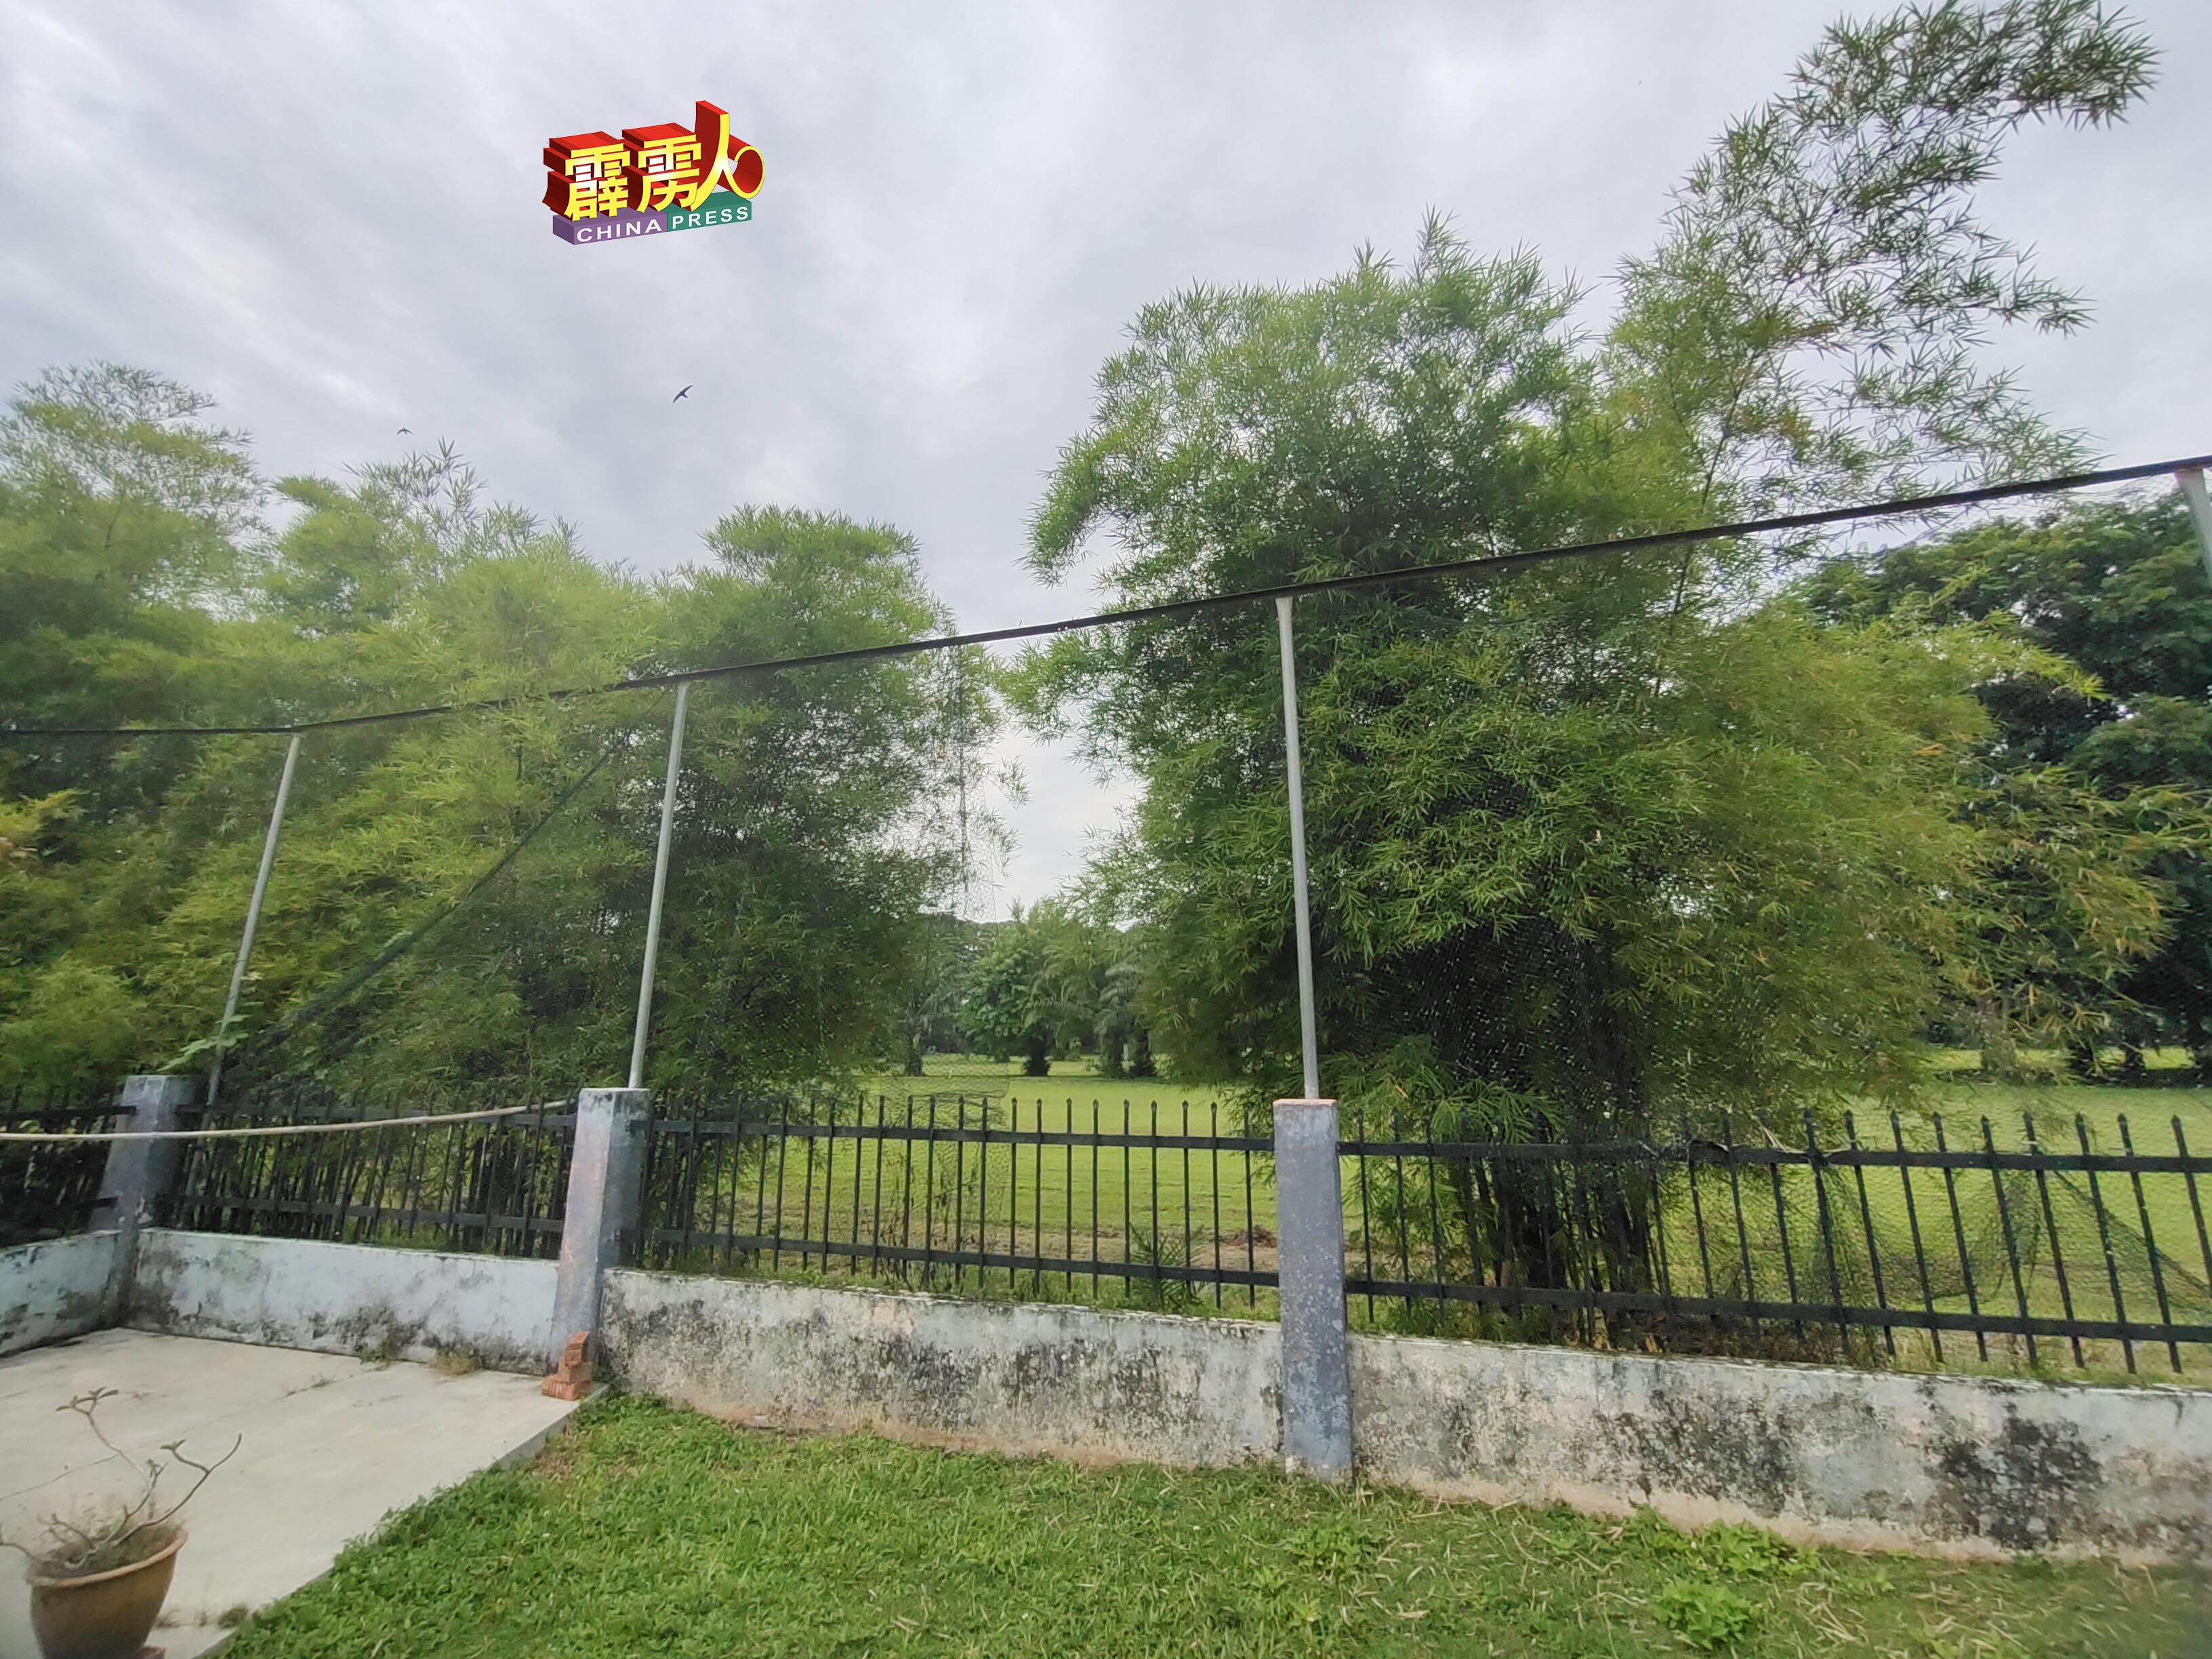 虽然当局有在高尔夫球场与住宅区旁植树及建保护网，仍无法阻止高尔夫球飞入住宅区。